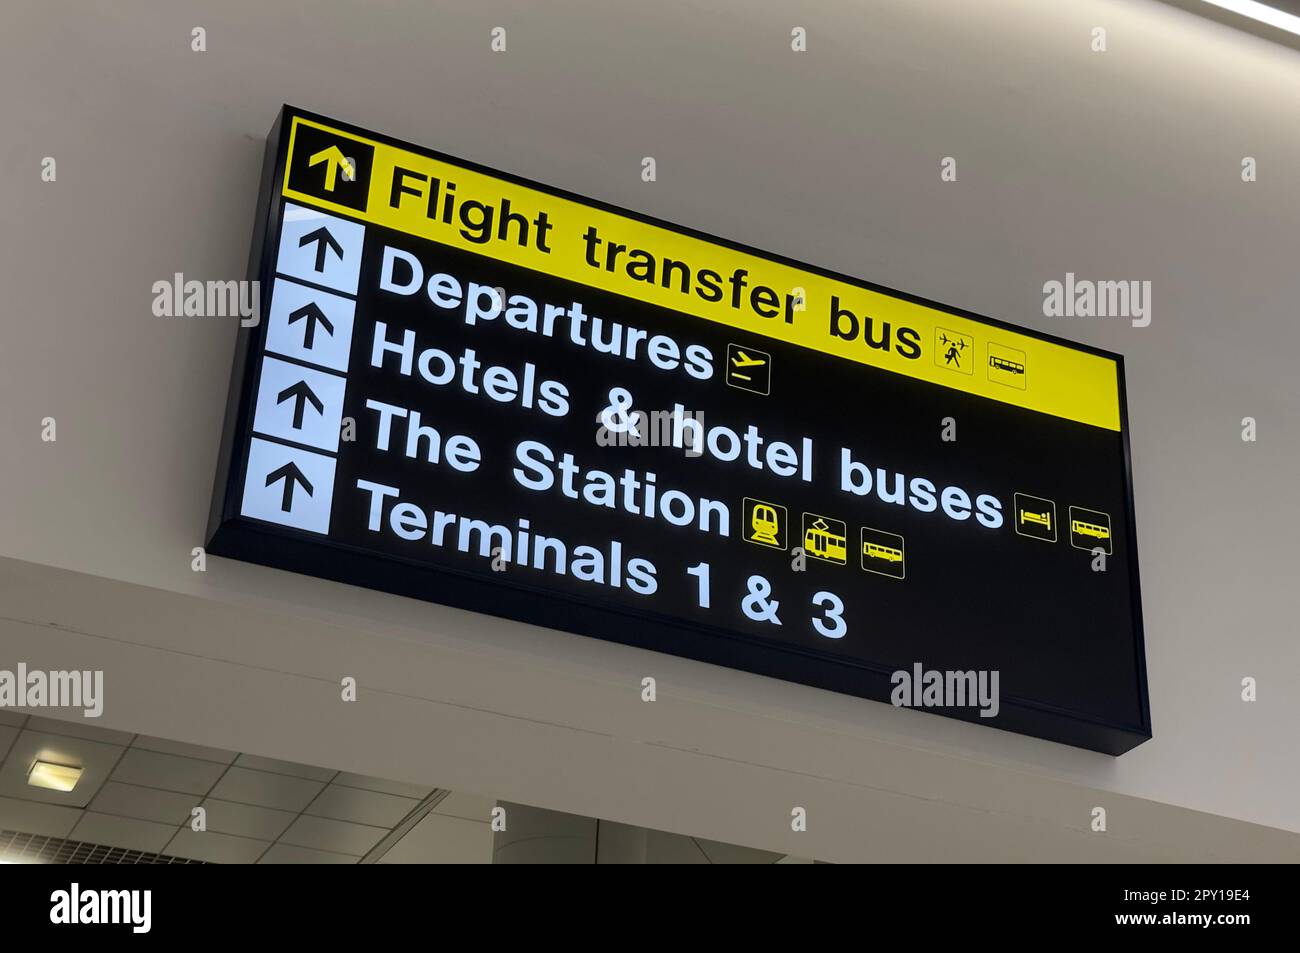 Melden Sie sich am internationalen Flughafen Manchester an, mit dem Bus, Abfahrten, Hotels und Bussen, Bahnhof und Terminals 1 und 2 Stockfoto